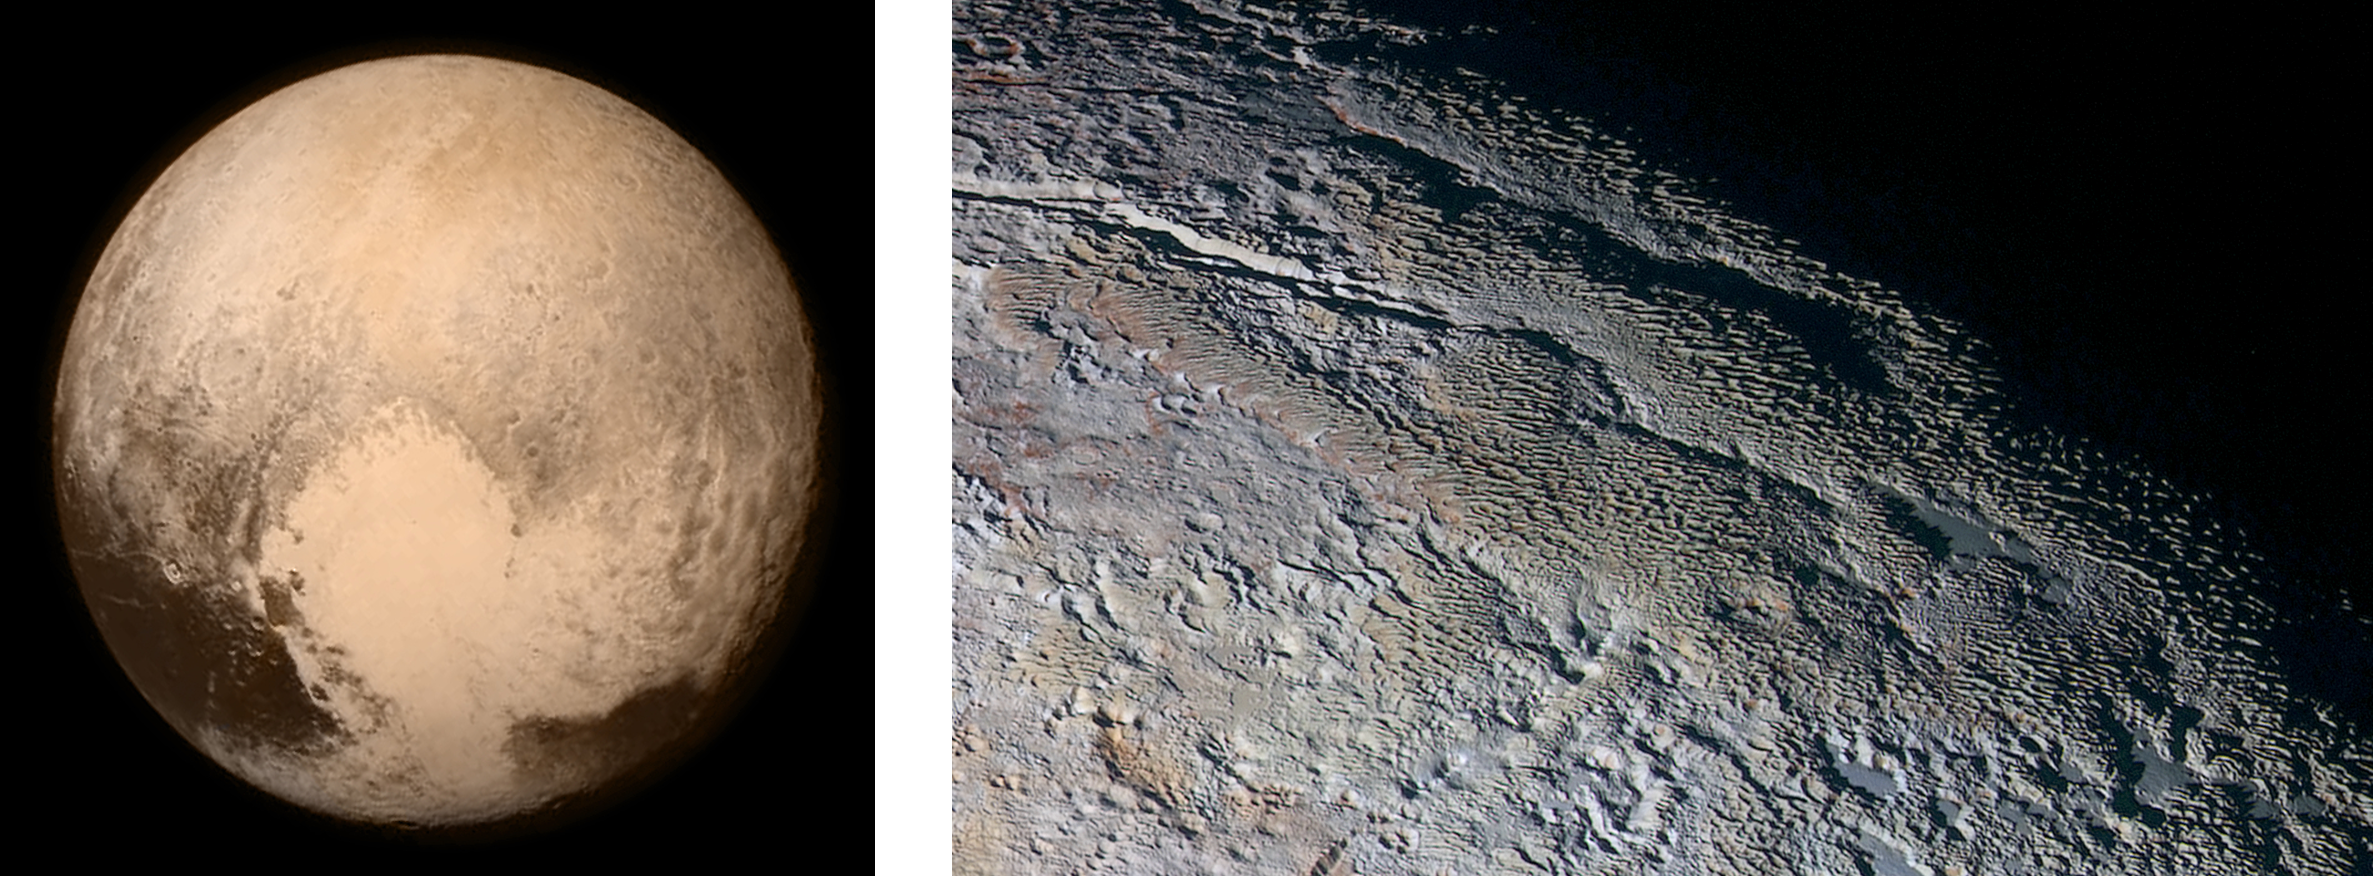 (왼쪽) 뉴 호라이즌스가 촬영한 명왕성의 근접 사진입니다. (오른쪽) 명왕성의 '타르타로스 도르사(Tartarus Dorsa)' 지역의 사진입니다. 이미지 출처: NASA